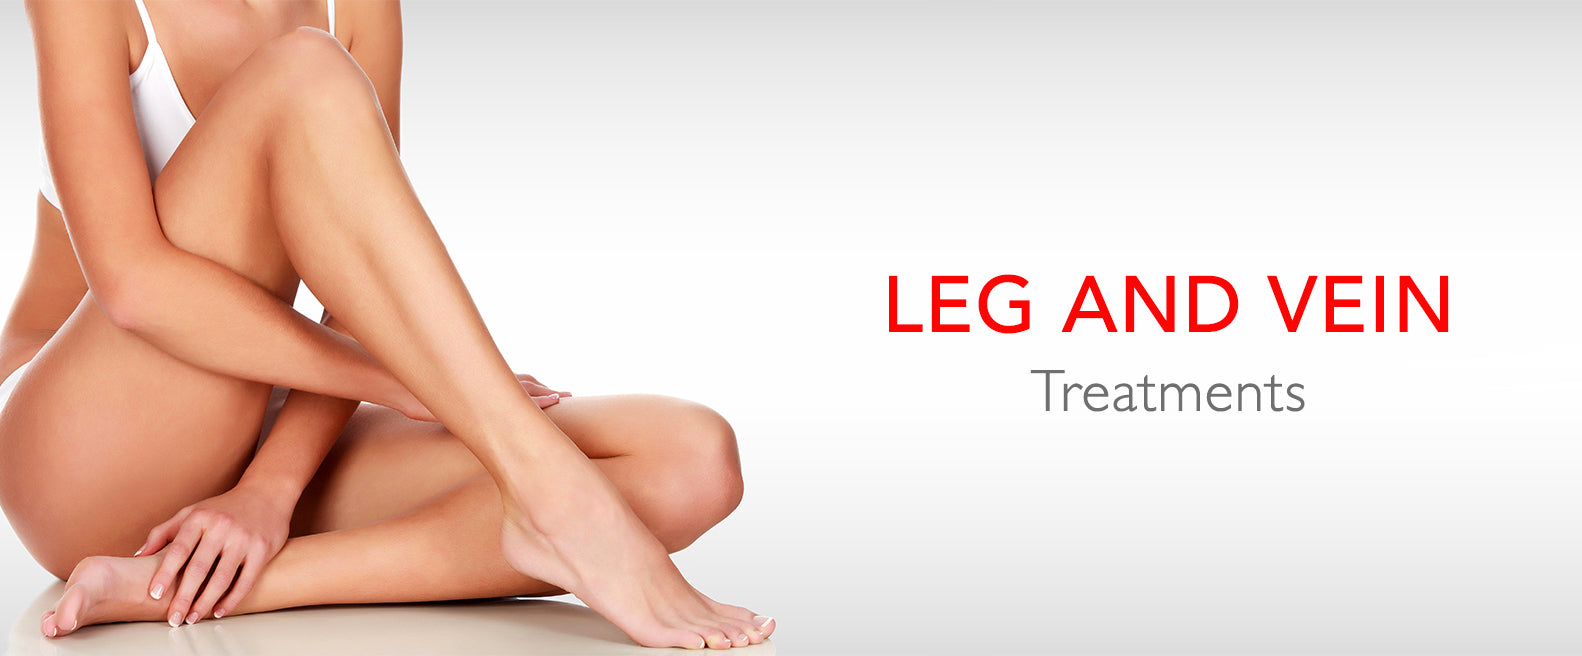 Leg and Vein Treatments